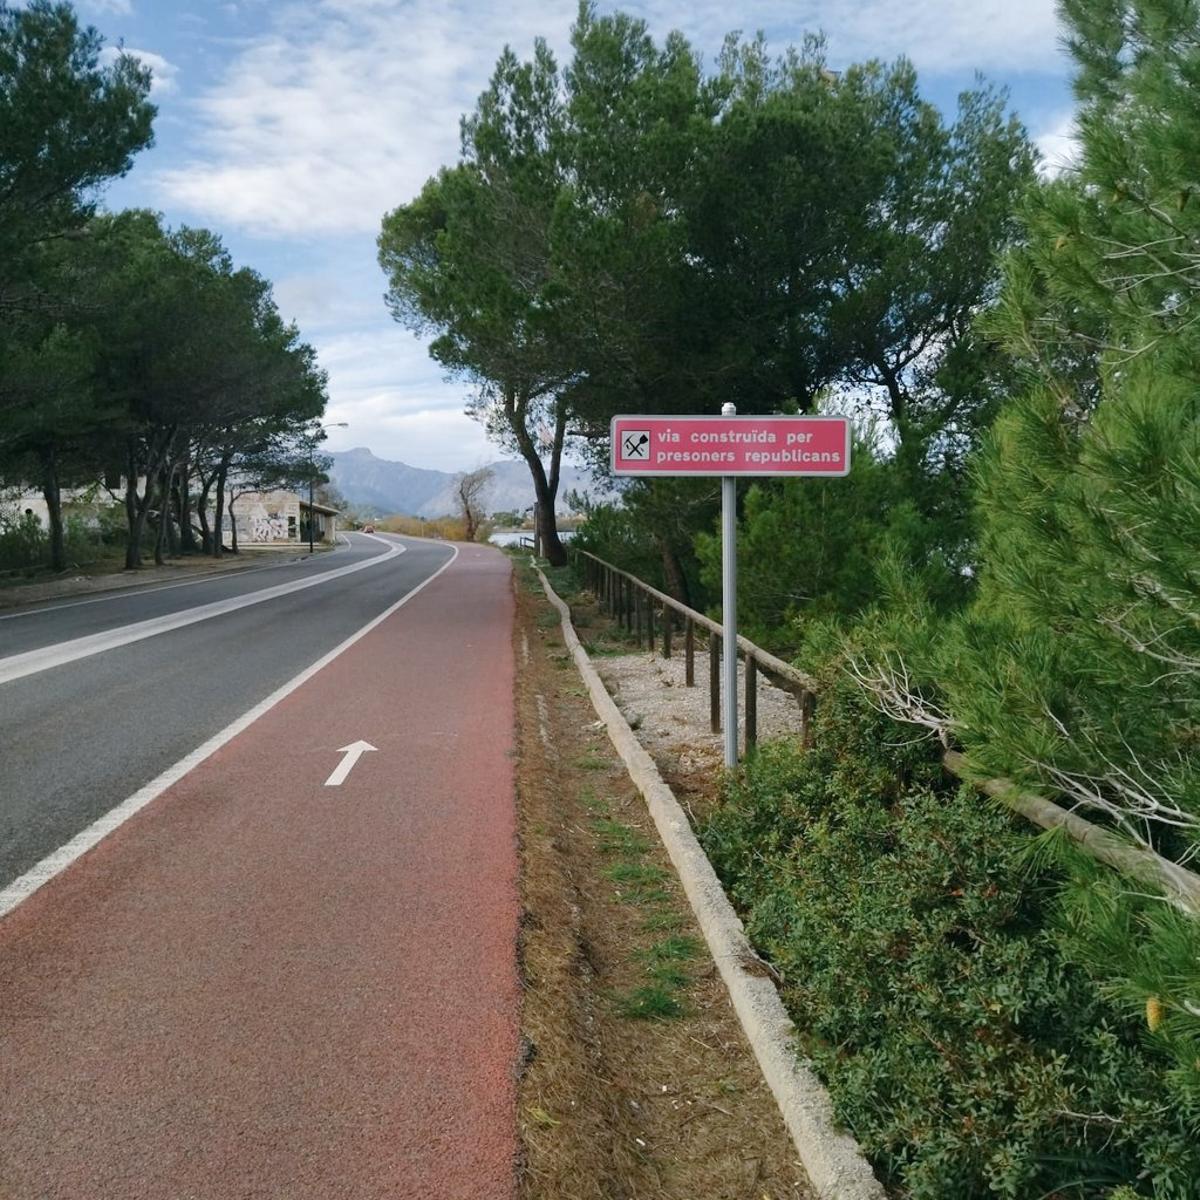 Seis paneles informativos y 60 señales recuerdan las carreteras de Mallorca construidas por 8.000 prisioneros del franquismo